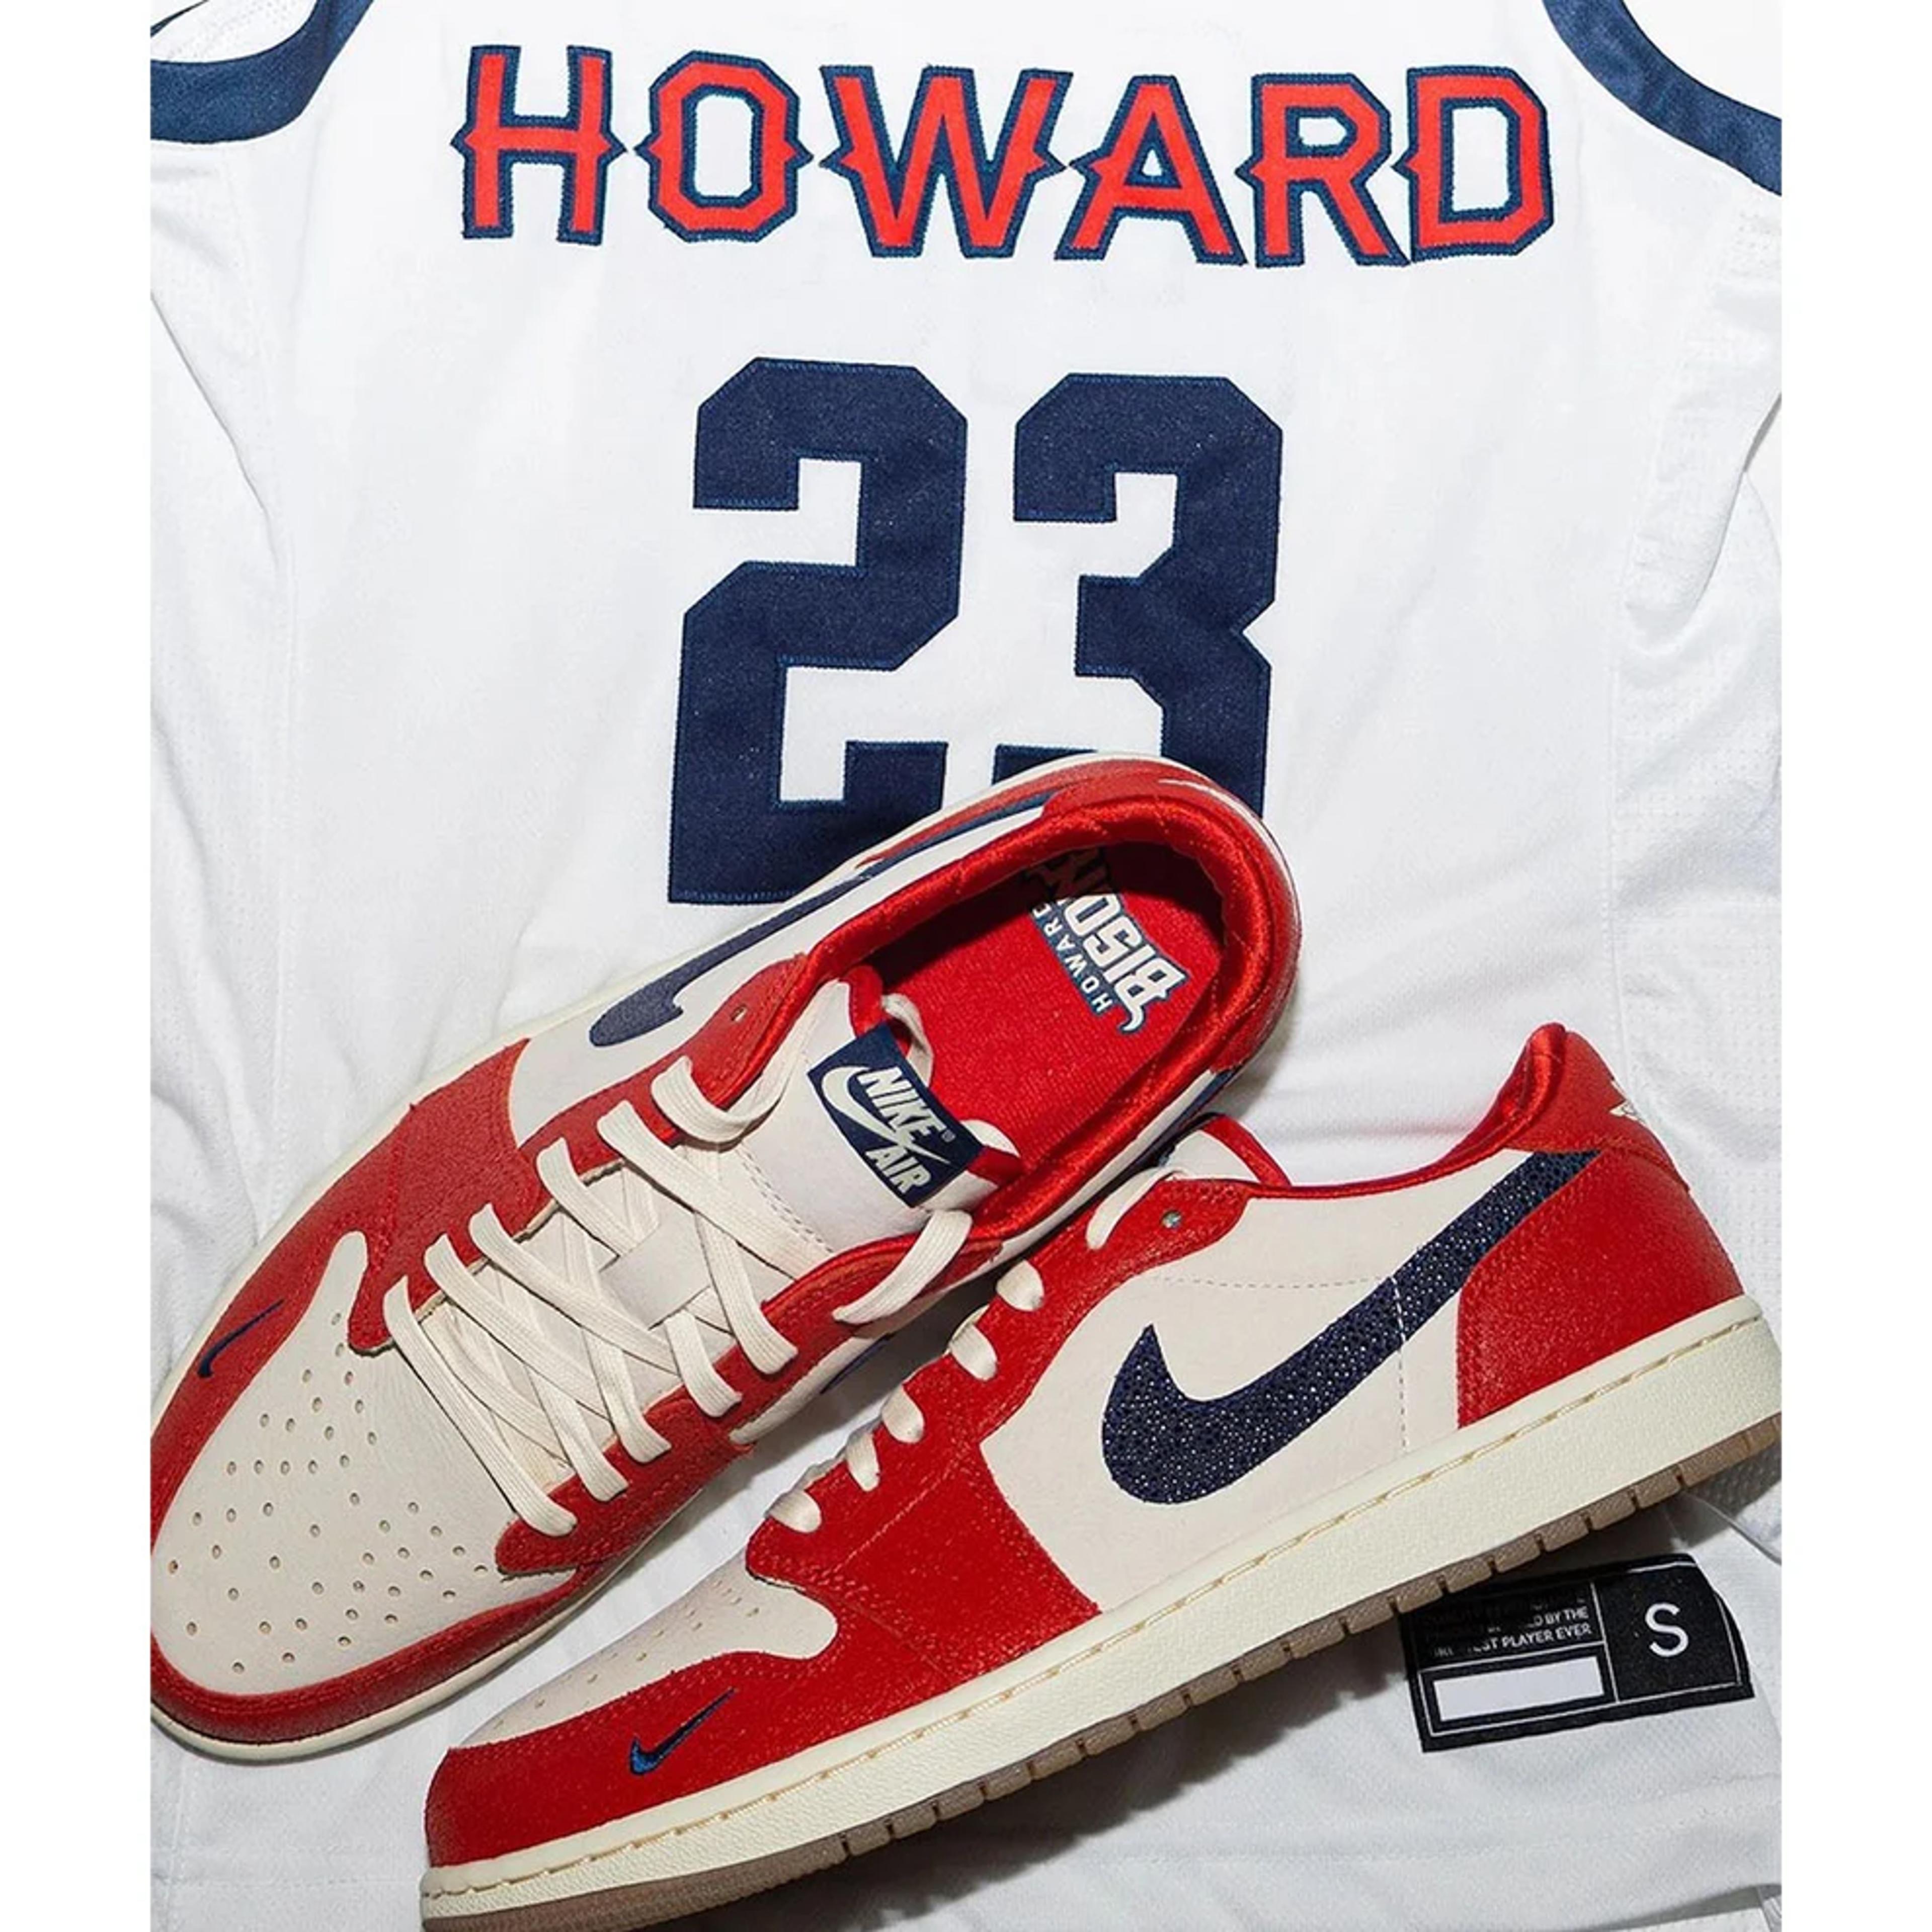 Howard University x Air Jordan 1 Retro Low OG 'Bison'